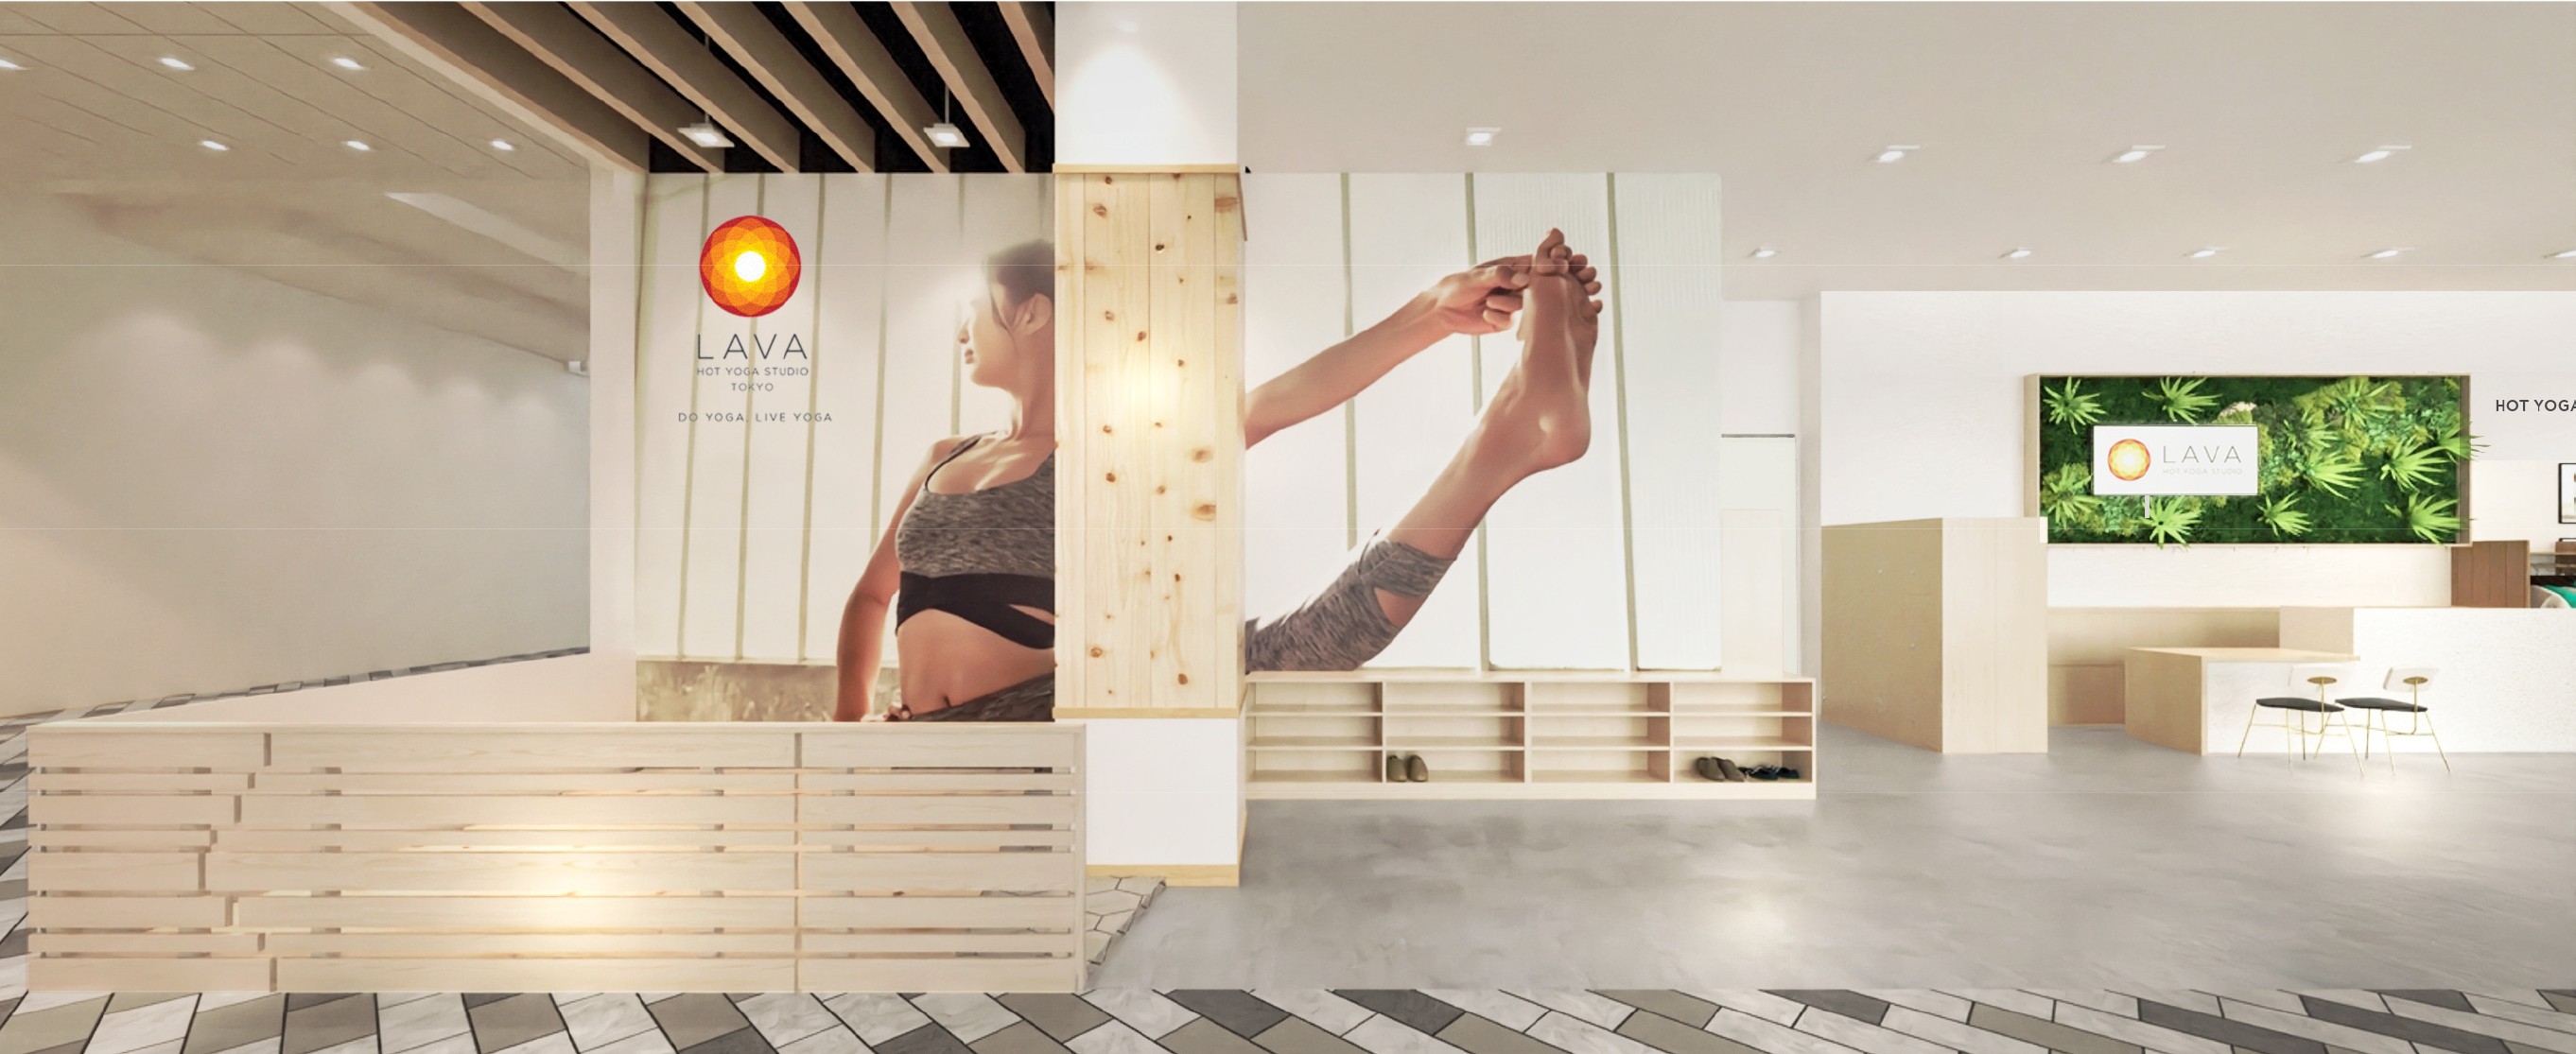 Hot Yoga Studio LAVA Singapore